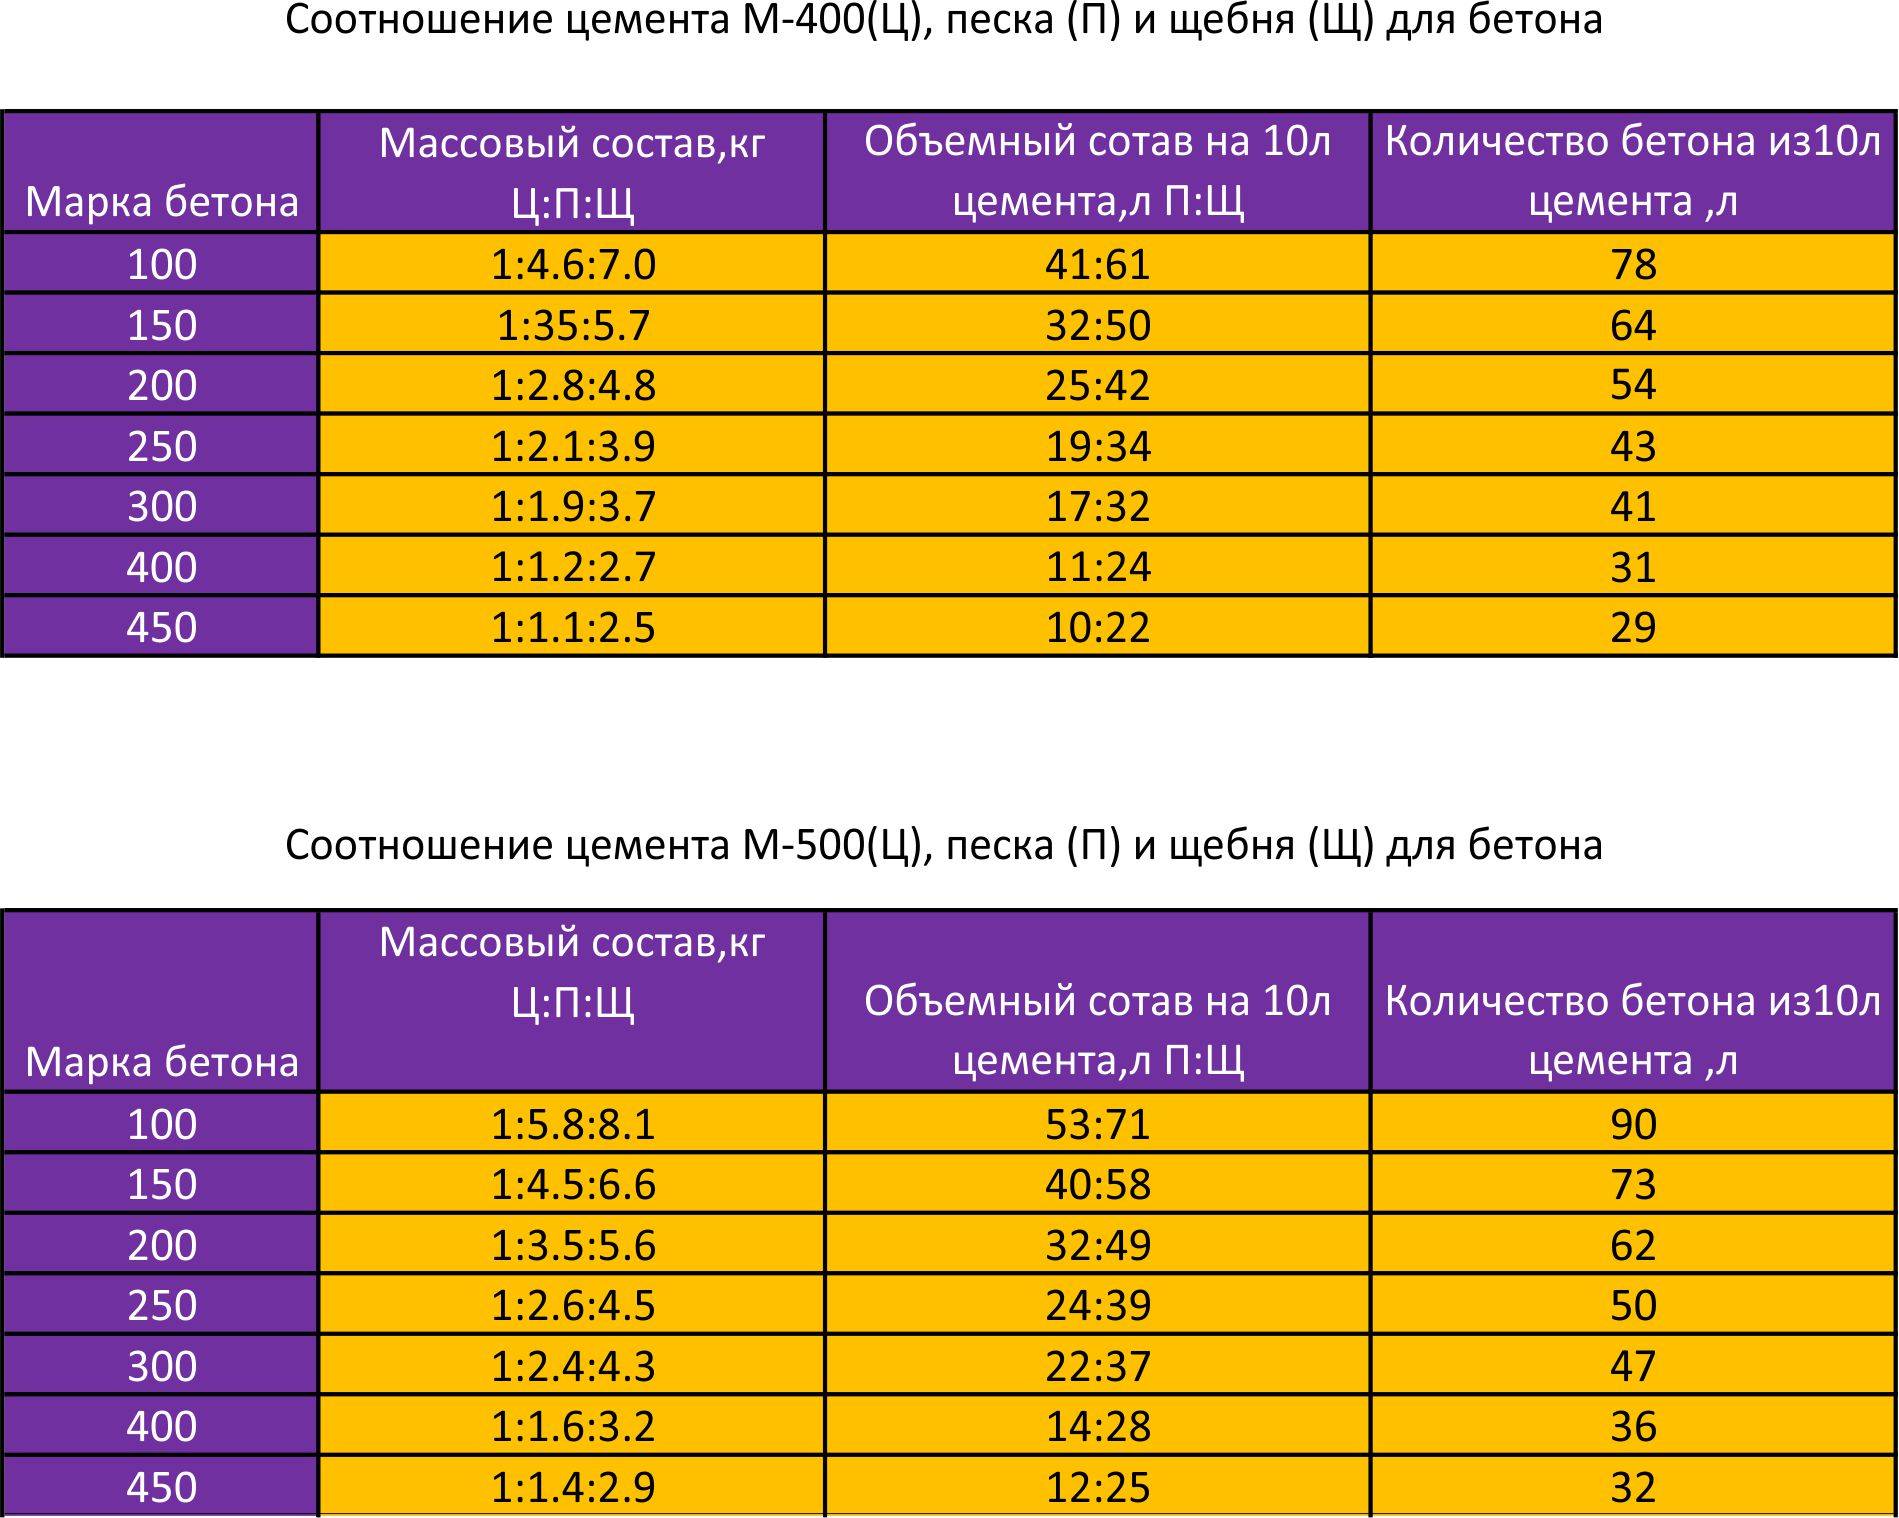 Бетон м150 (в10-в12,5): технические характеристики, состав и пропорции